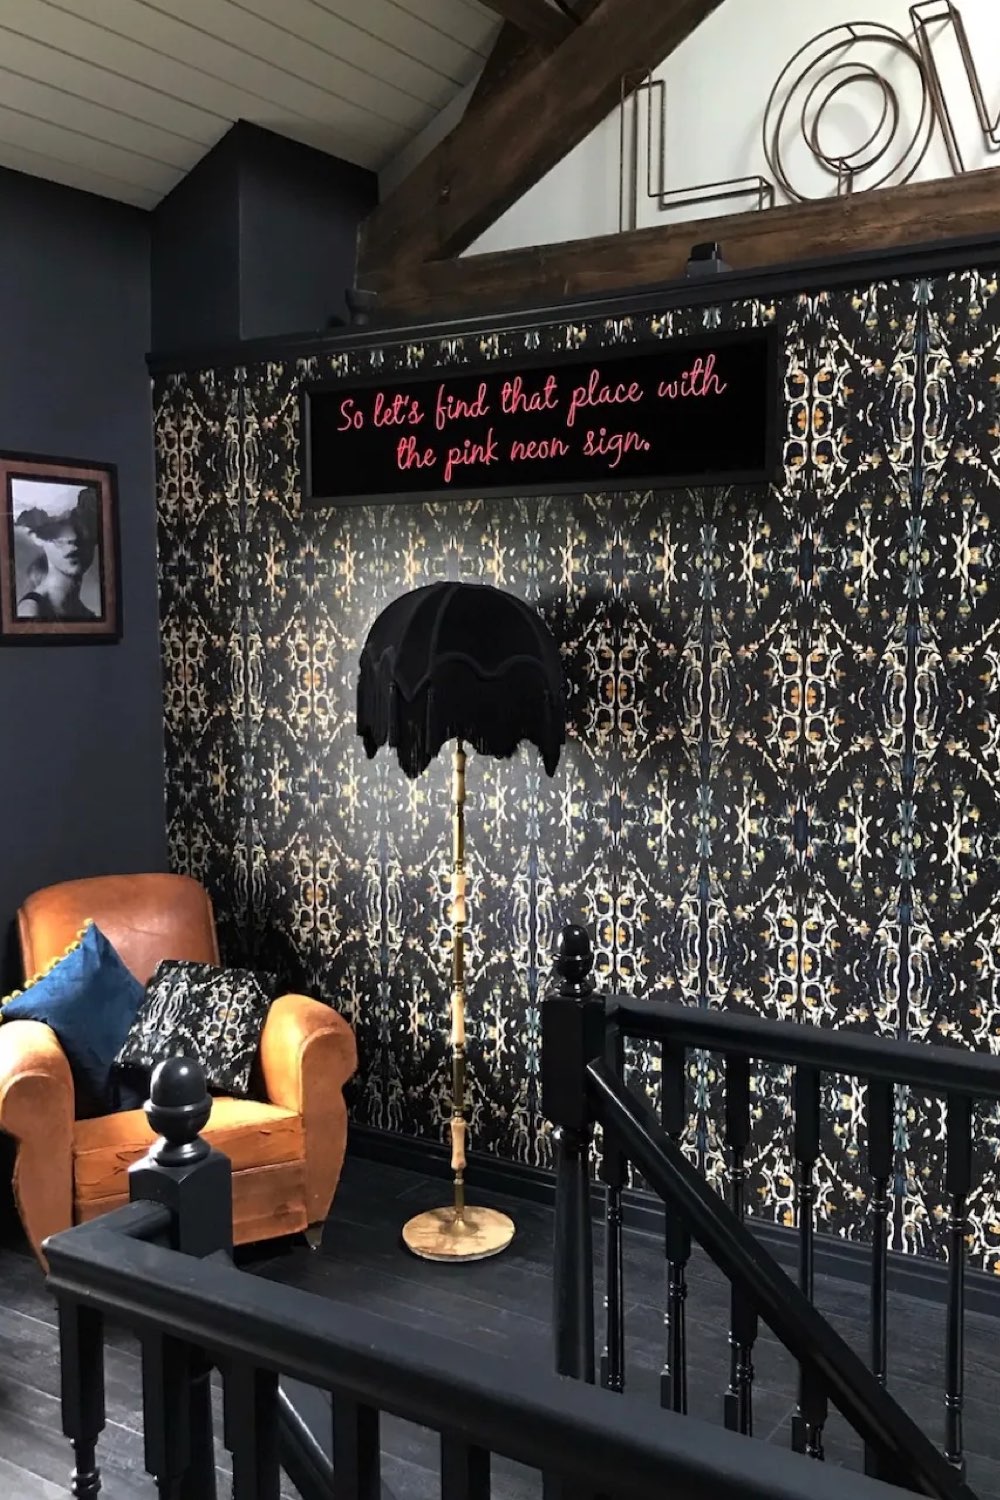 interieur couleur sourde eclectique ppier peint motif gothique lampe vintage fauteuil club en cuir naturel palier étage